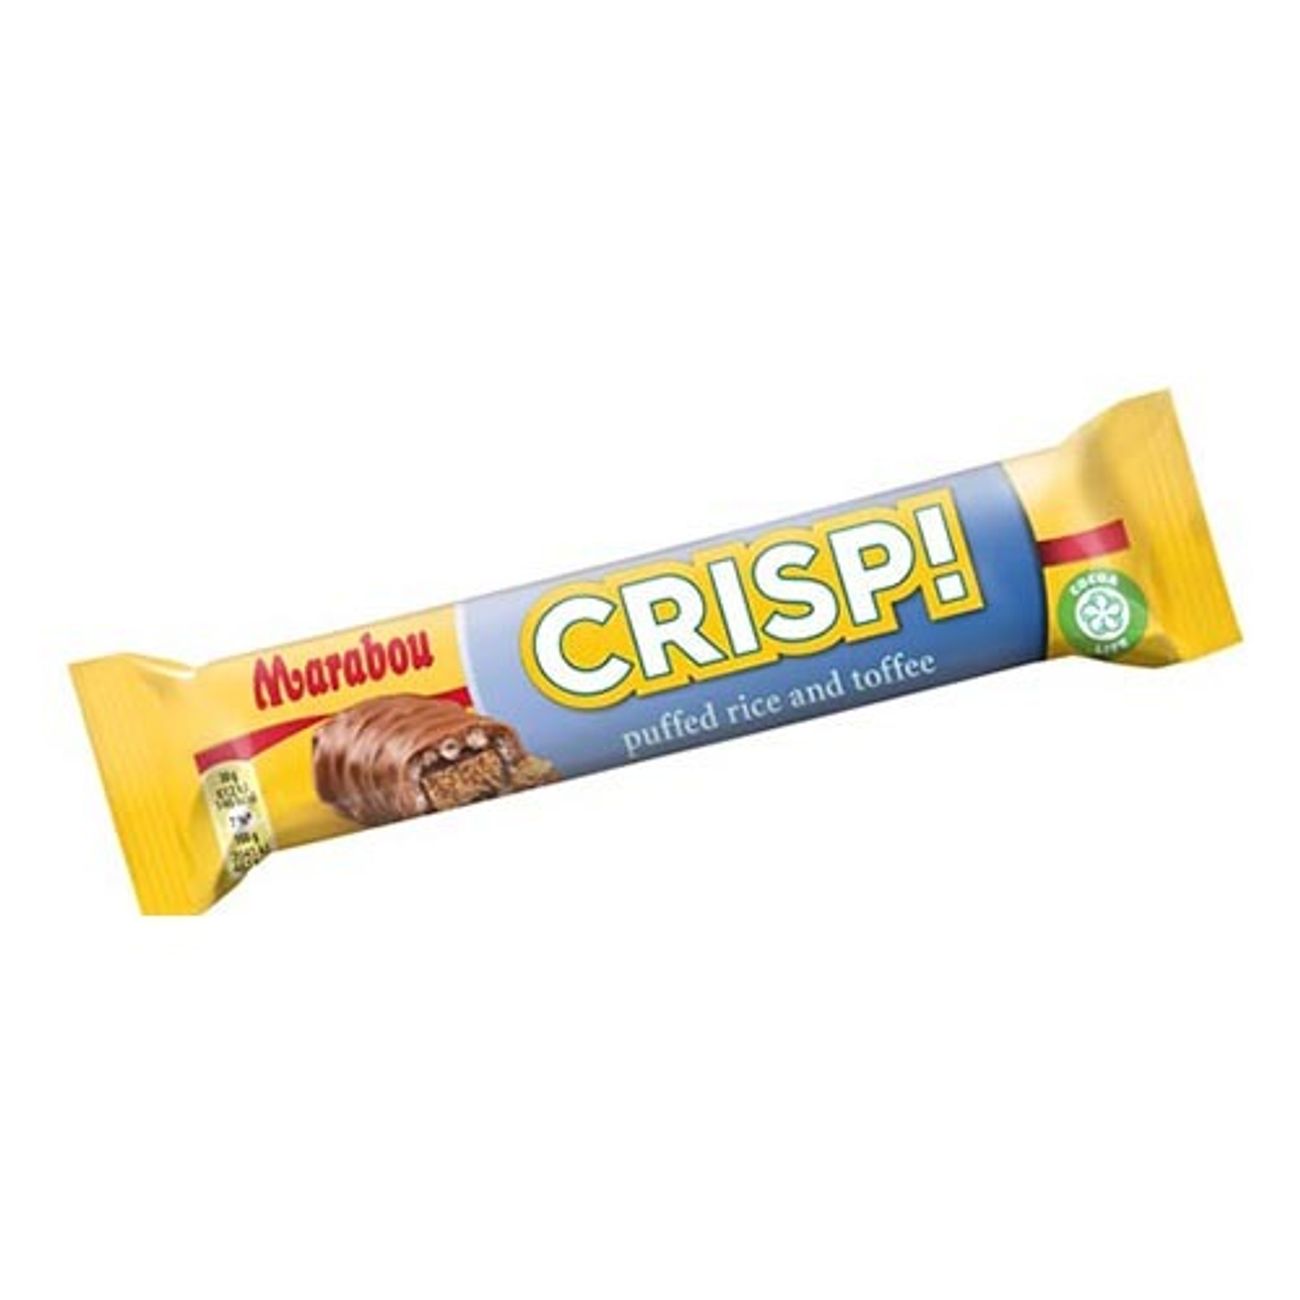 crisp-marabou-60gr-25-st-1